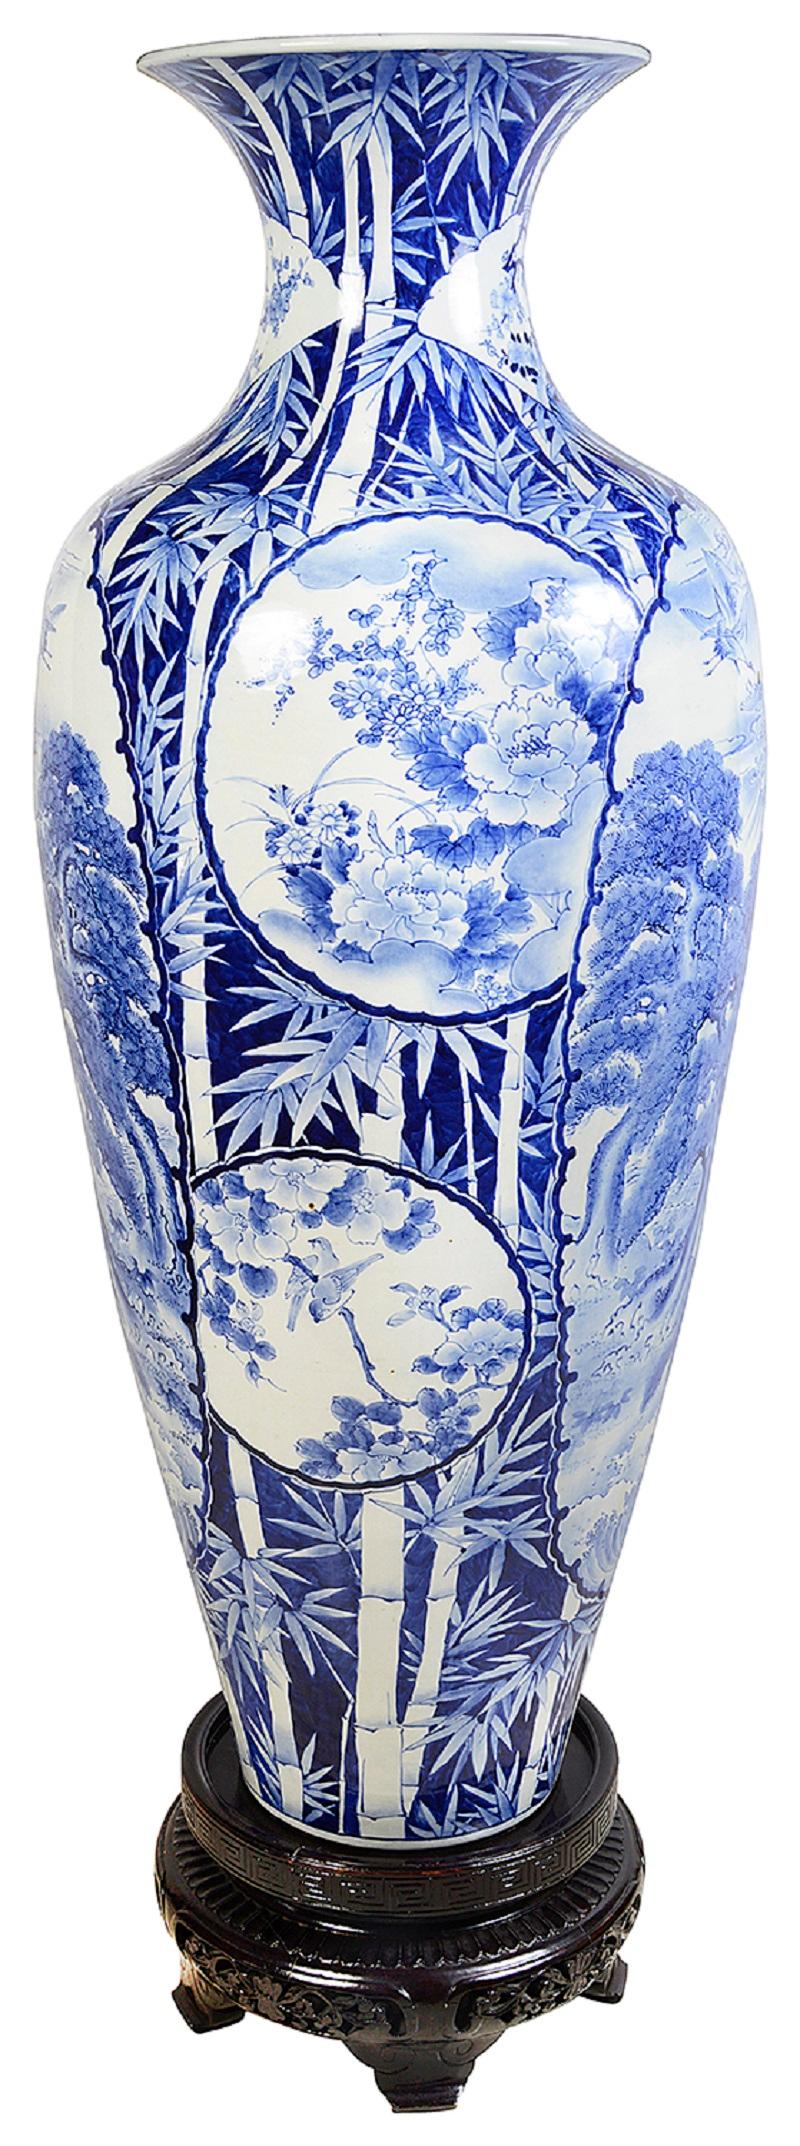 Grand et impressionnant vase japonais bleu et blanc sur pied de la fin du XIXe siècle (période Meiji 1868-1912).
De magnifiques bambous peints à la main sur le sol, avec des panneaux insérés représentant des scènes montagneuses, des arbres en fleurs